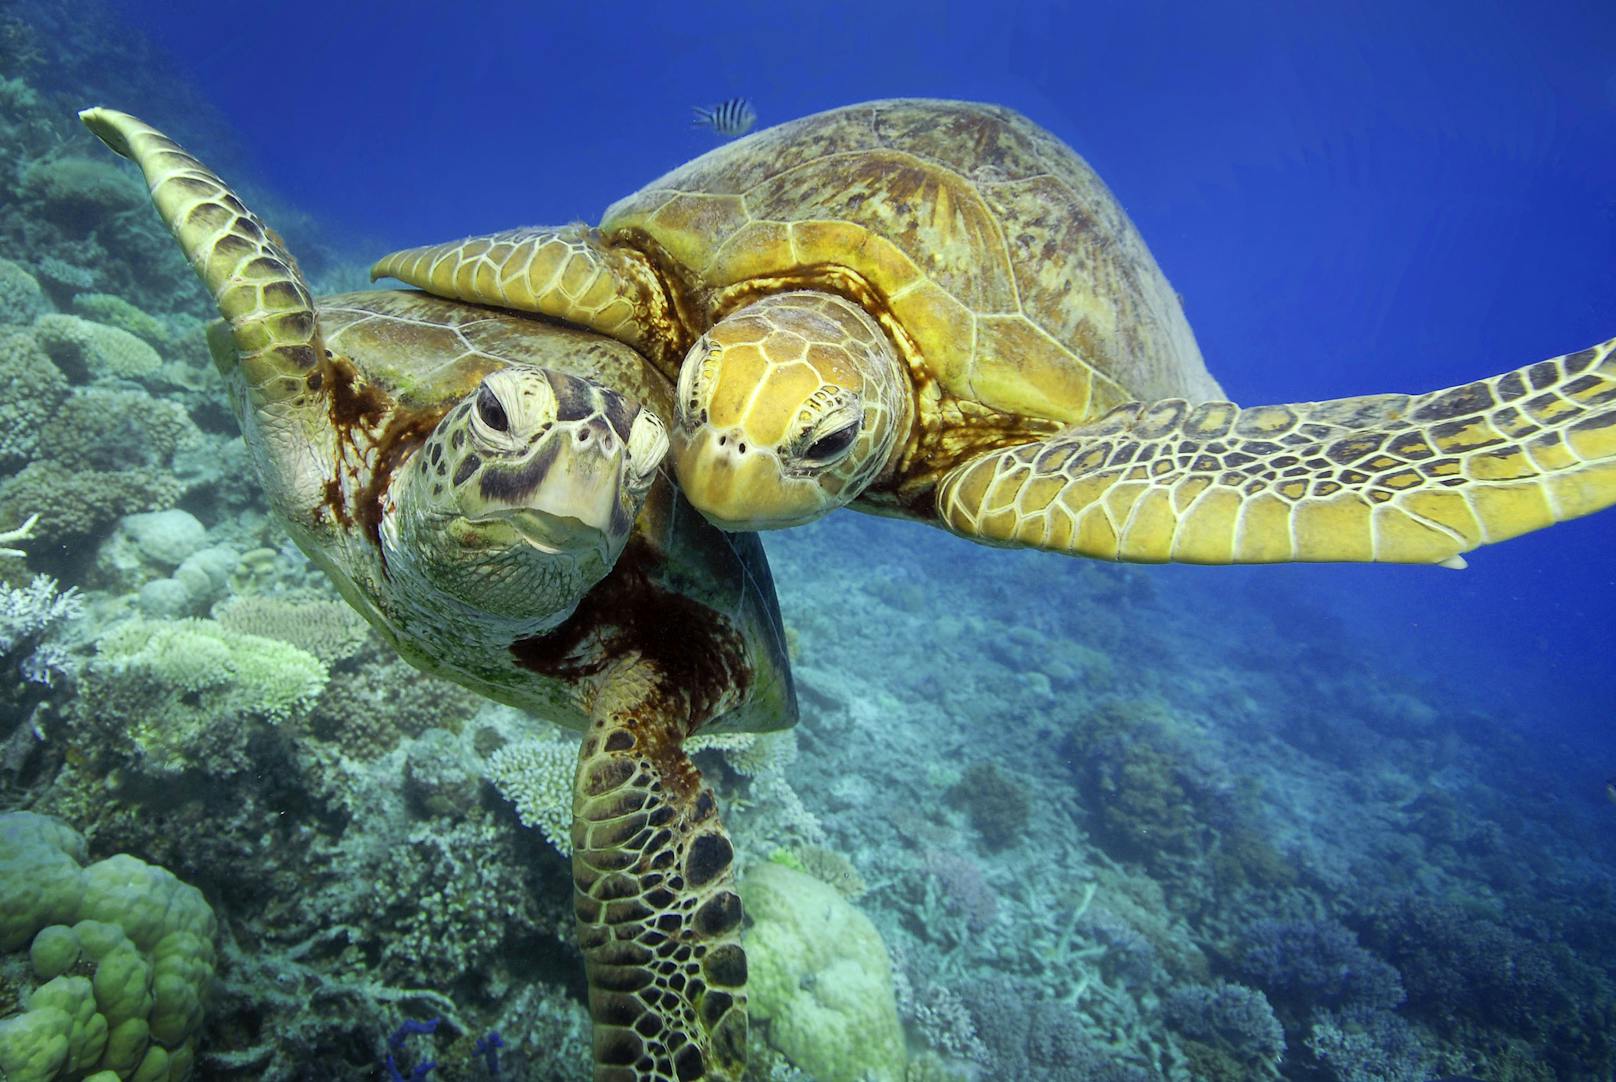 Zwei grüne Meeresschildkröten beim Turteln.&nbsp;Die Grüne Meeresschildkröte (Chelonia mydas) ist nicht nur grün, sondern auch schwarzbraun bis gelblichgrün gefärbt. Die Tiere können bis zu 1,5 Meter lang werden und bis zu 200 Kilogramm auf die Waage bringen.&nbsp;